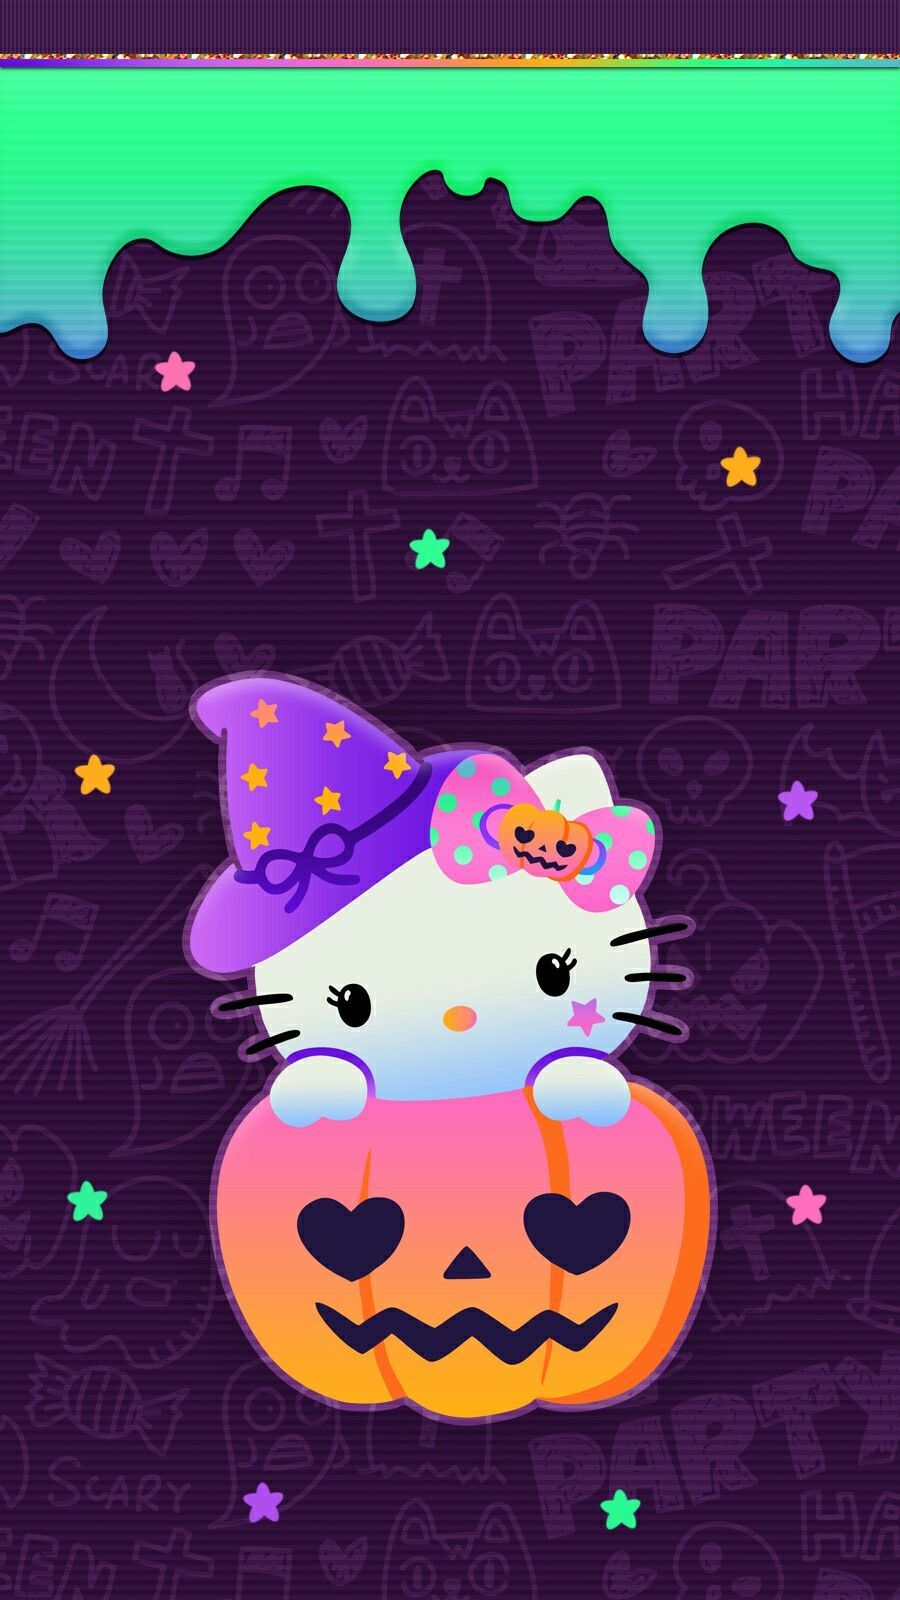 hello_kitty #halloween #wallpaper #iphone #halloweenbackgroundwallpaper #h. Hello kitty halloween wallpaper, Hello kitty wallpaper, Hello kitty halloween